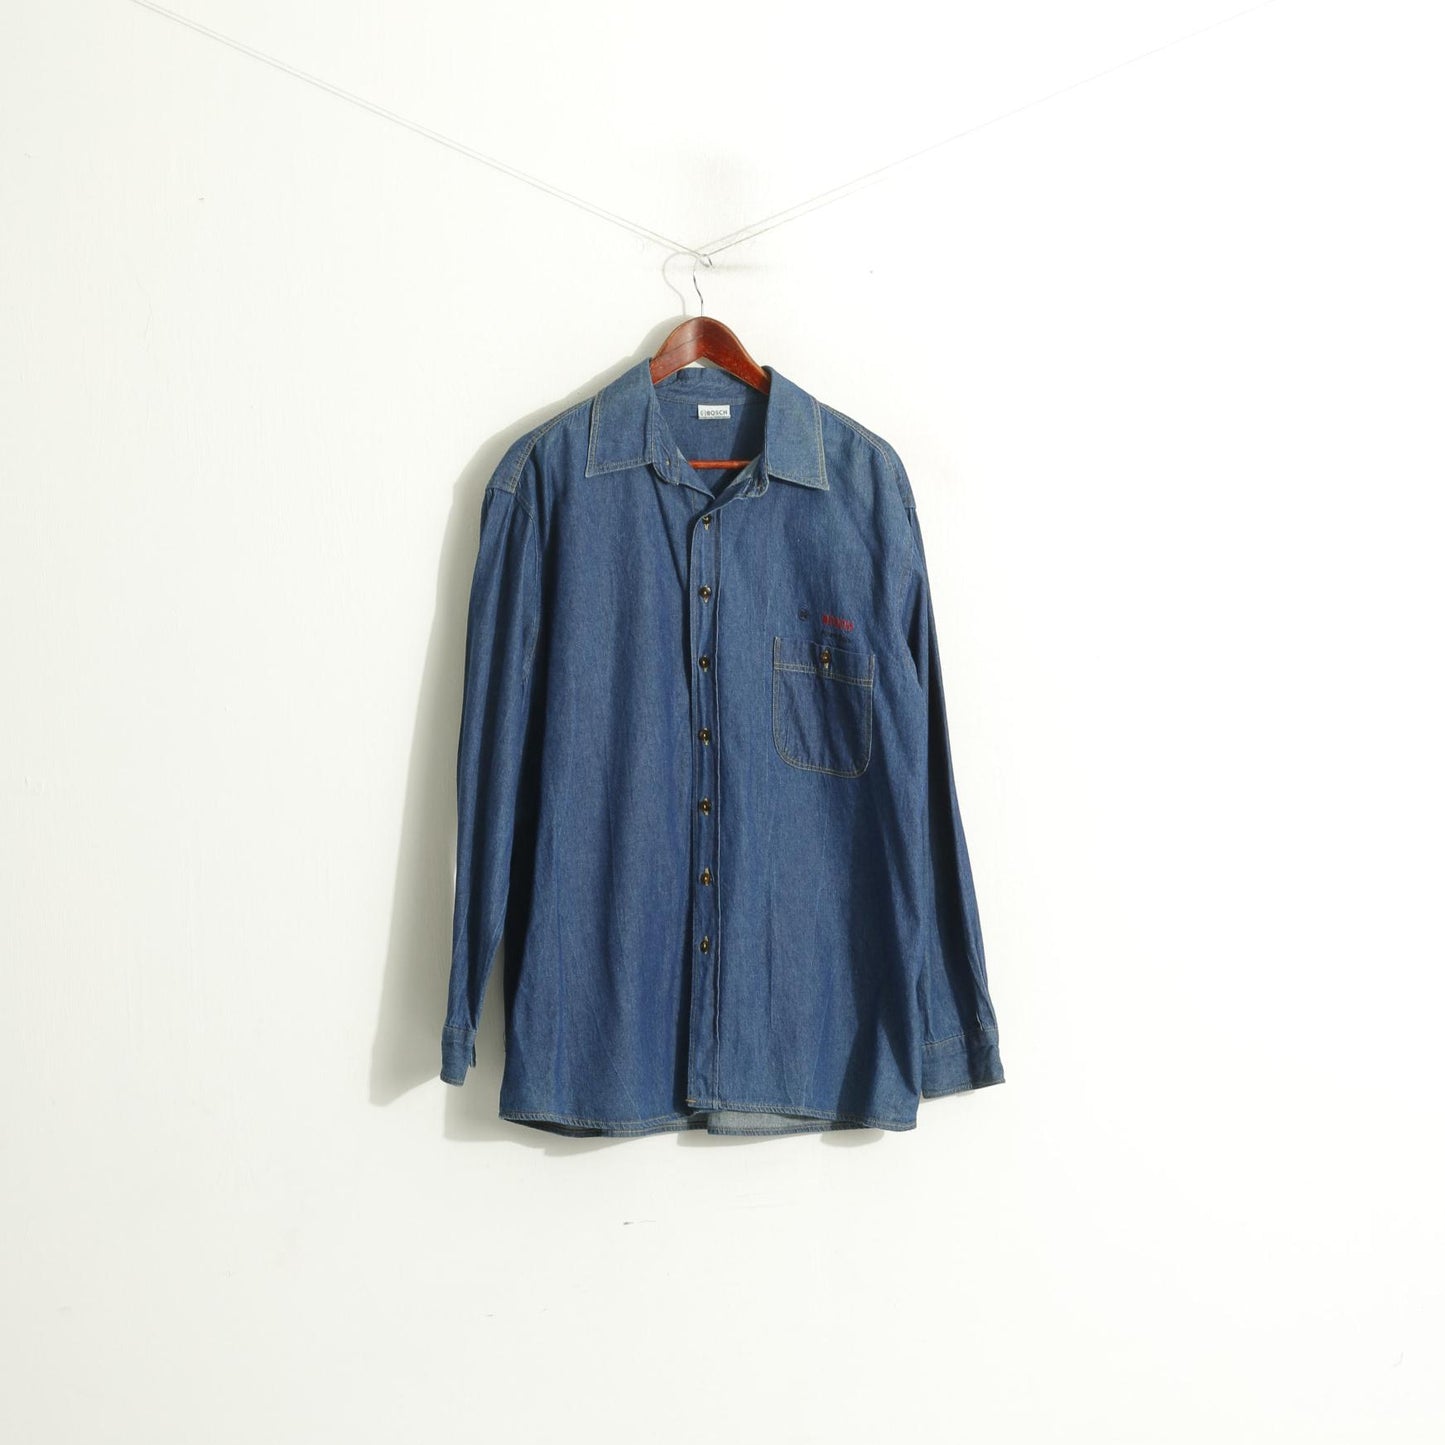 Bosch Men L Casual Shirt Navy Denim Cotton Workwear Long Sleeve Top